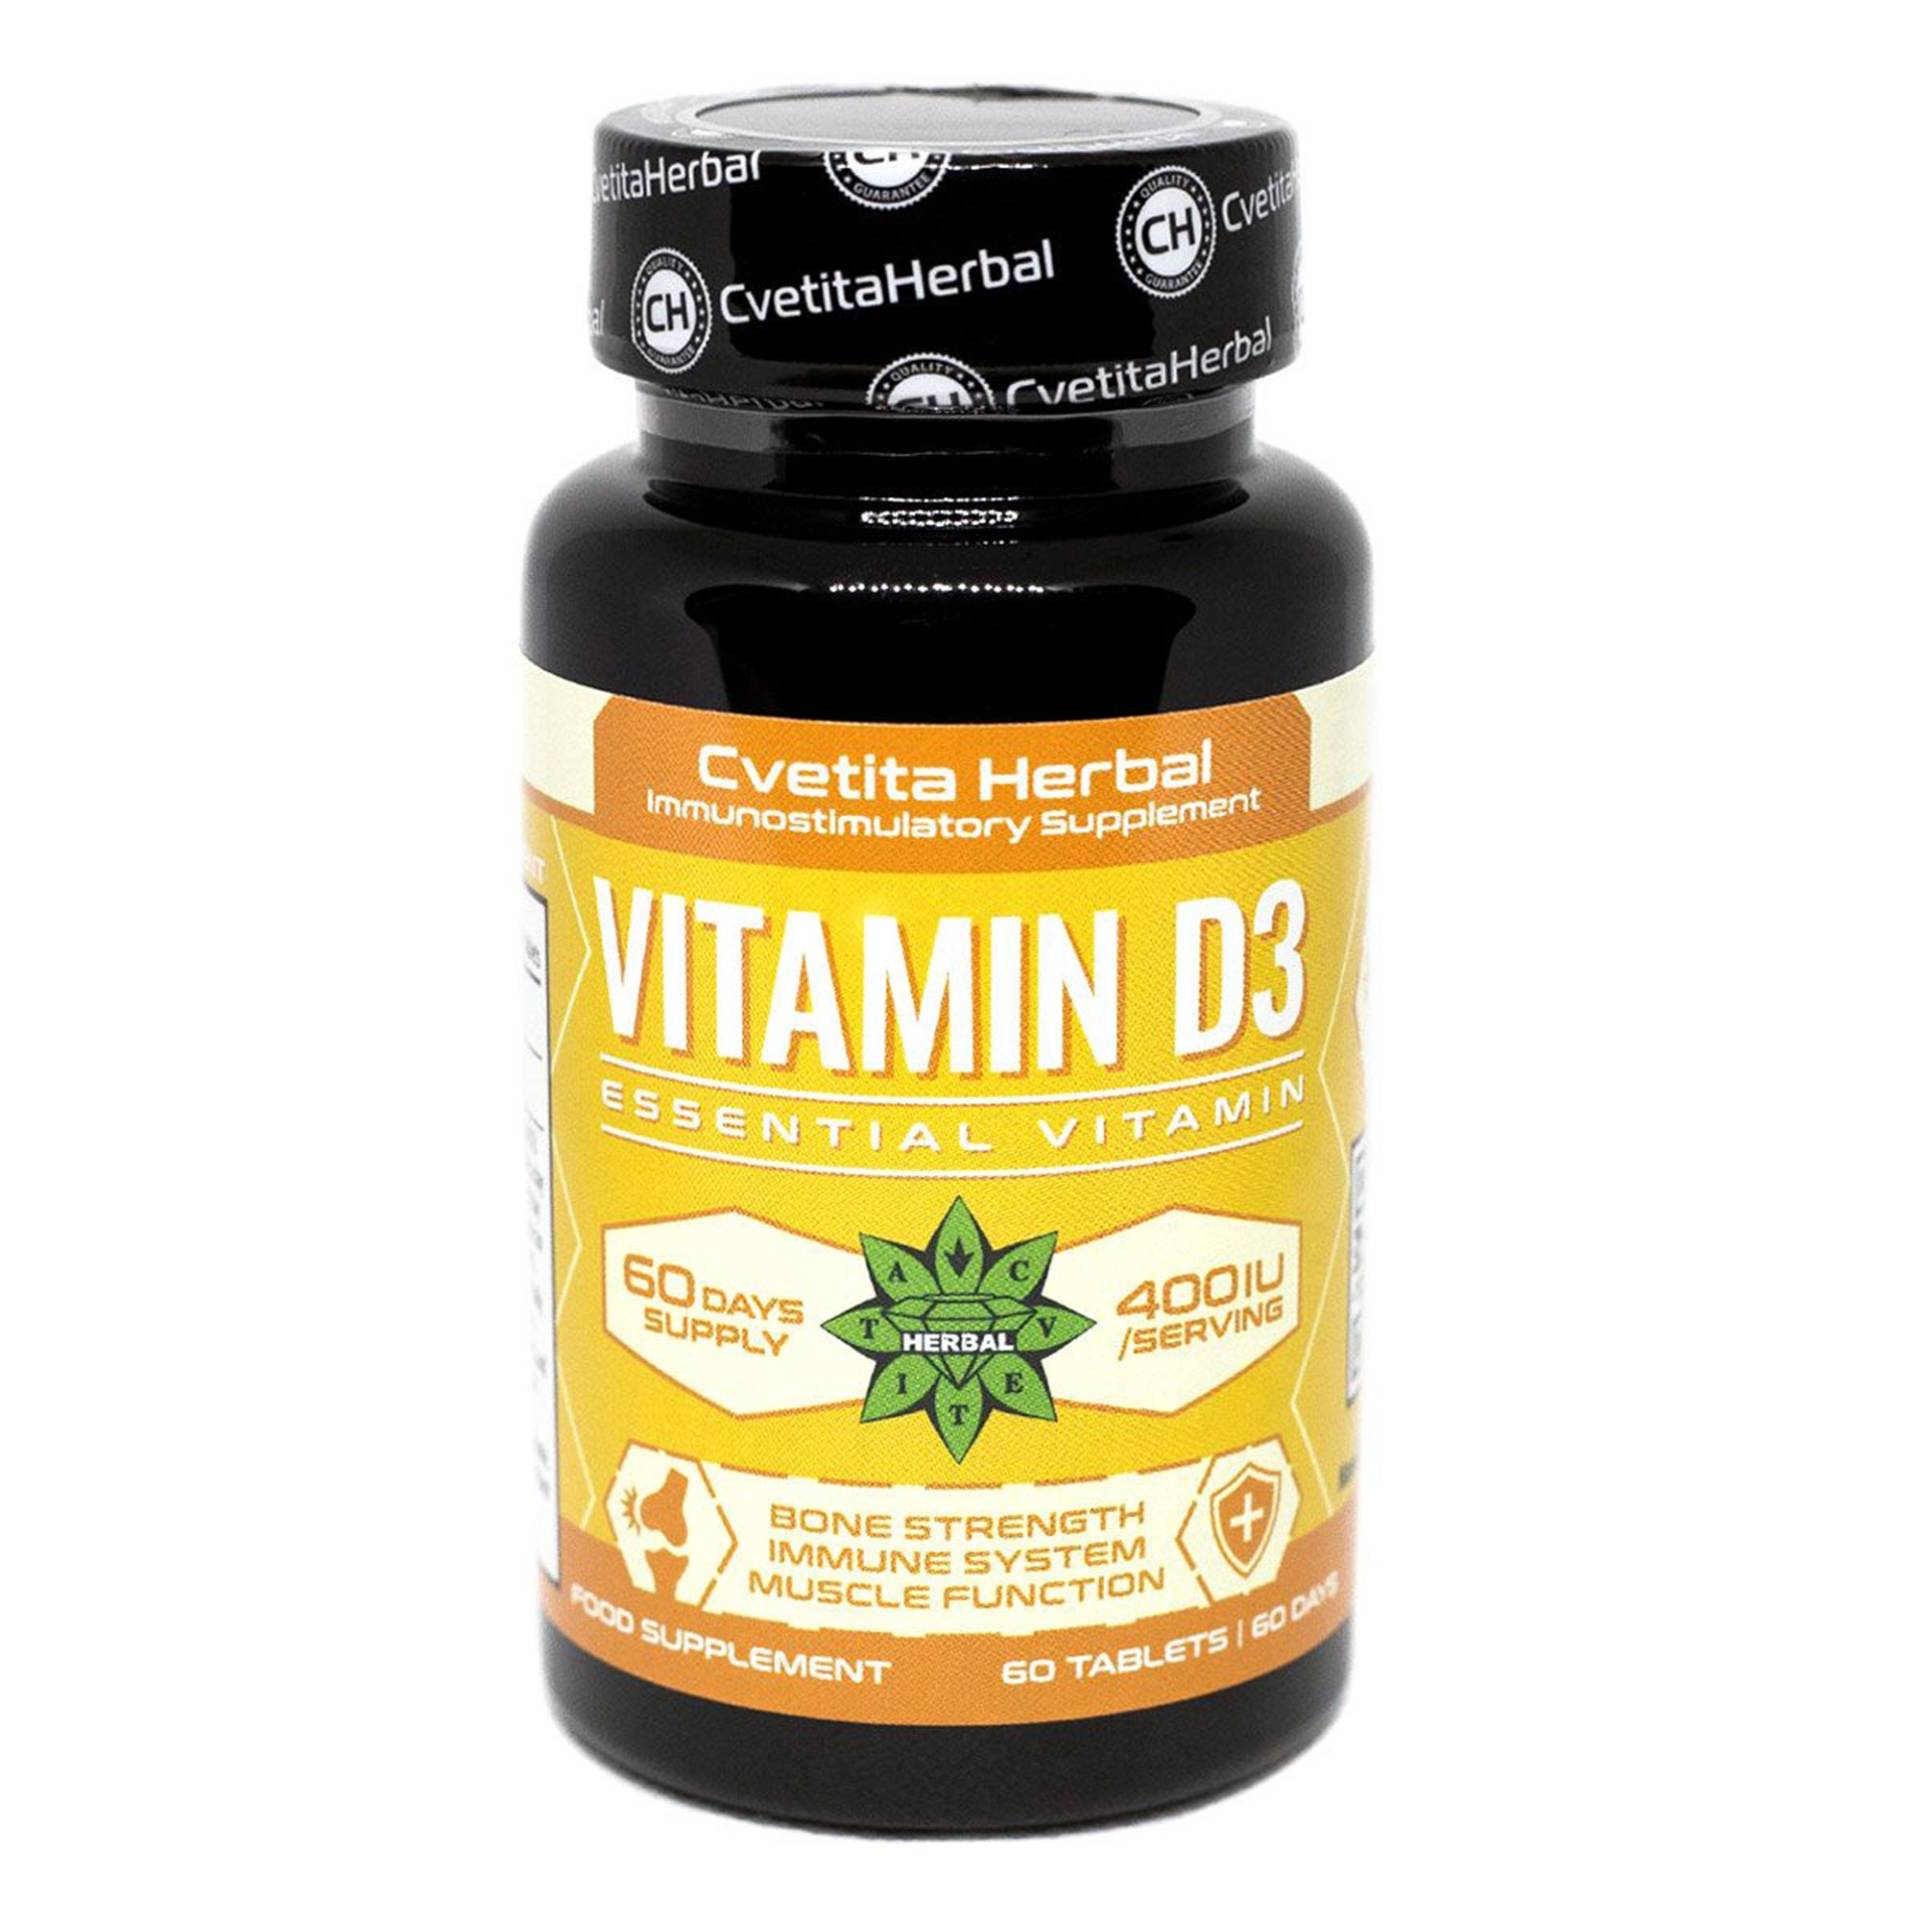 Vitamin D3, Immununterstützung, Knochengesundheit, Gesunde Muskelfunktion, Starke Gelenke, Cholecalciferol, Hohe Stärke, Sonnenschein 60 Tabletten von Etsy - B2Btrade